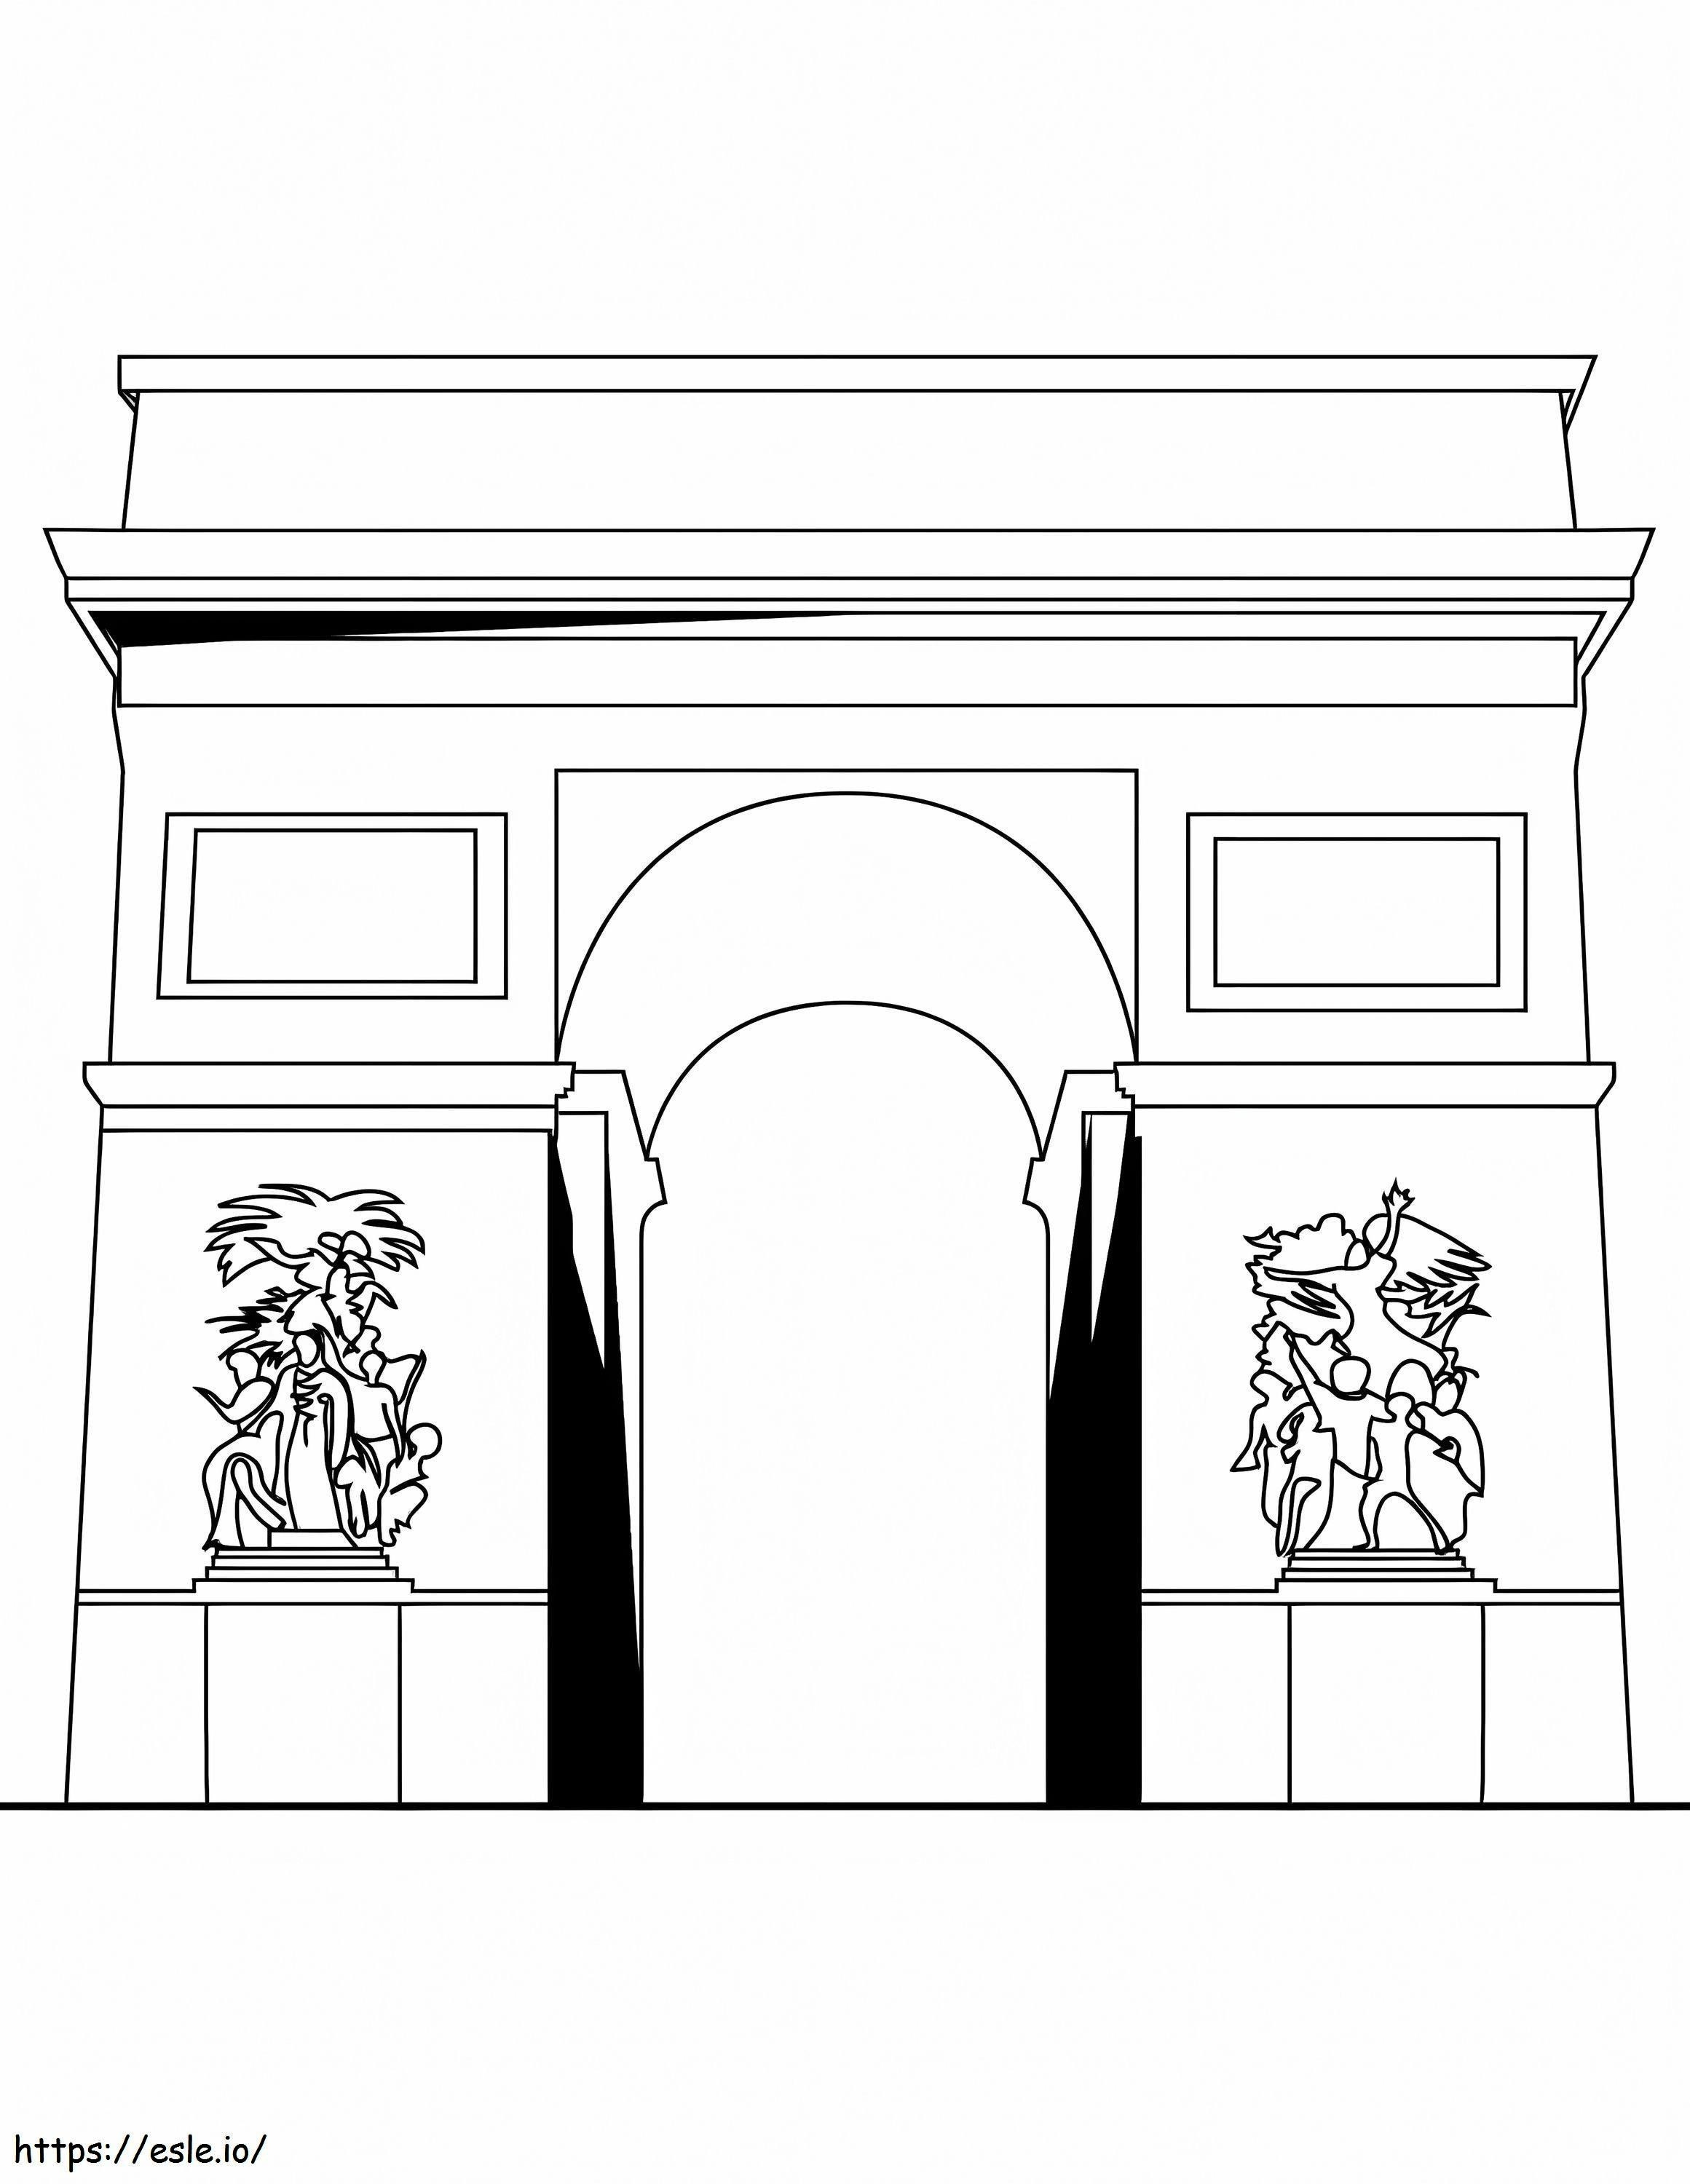 Coloriage Arc de Triomphe à imprimer dessin